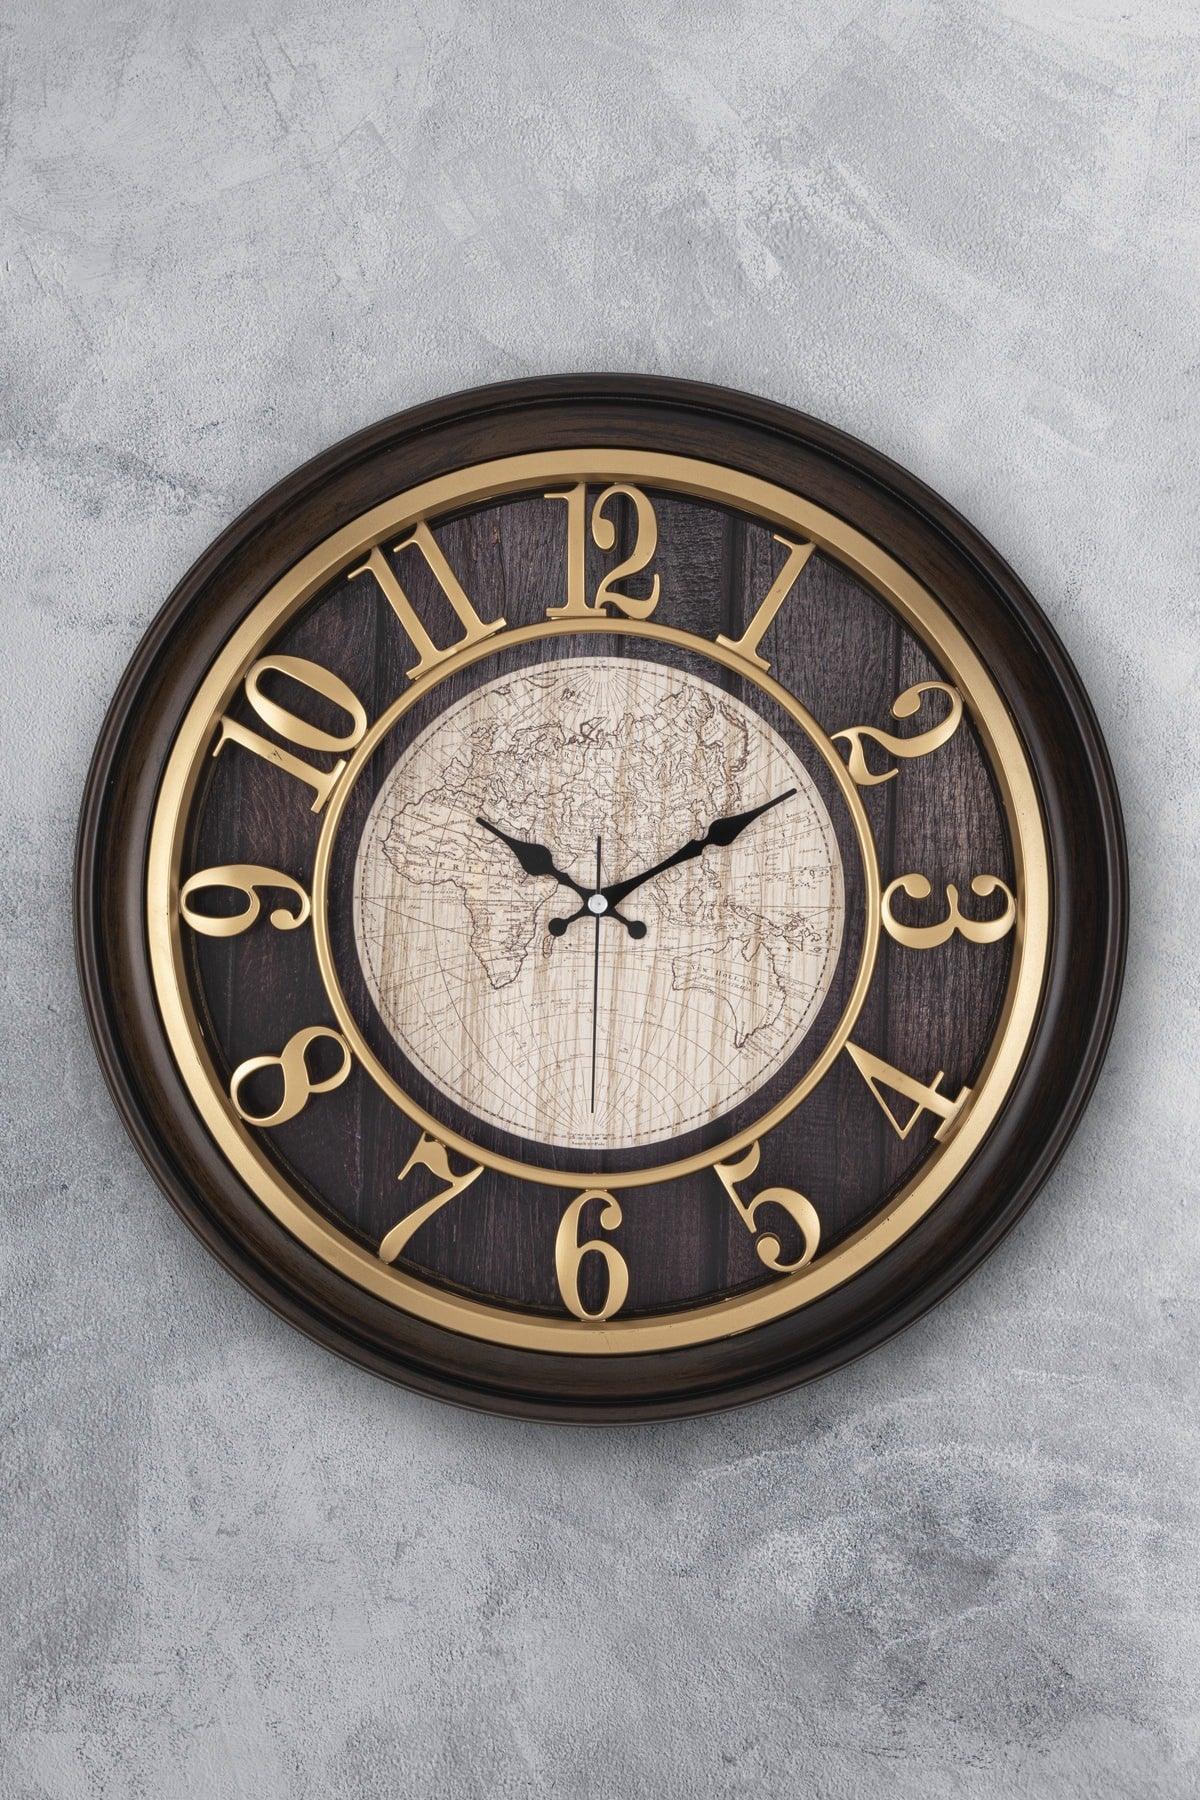 46 Cm Wooden Look 3d Embossed Flowing Seconds Silent Mechanism Decorative Wall Clock - Swordslife